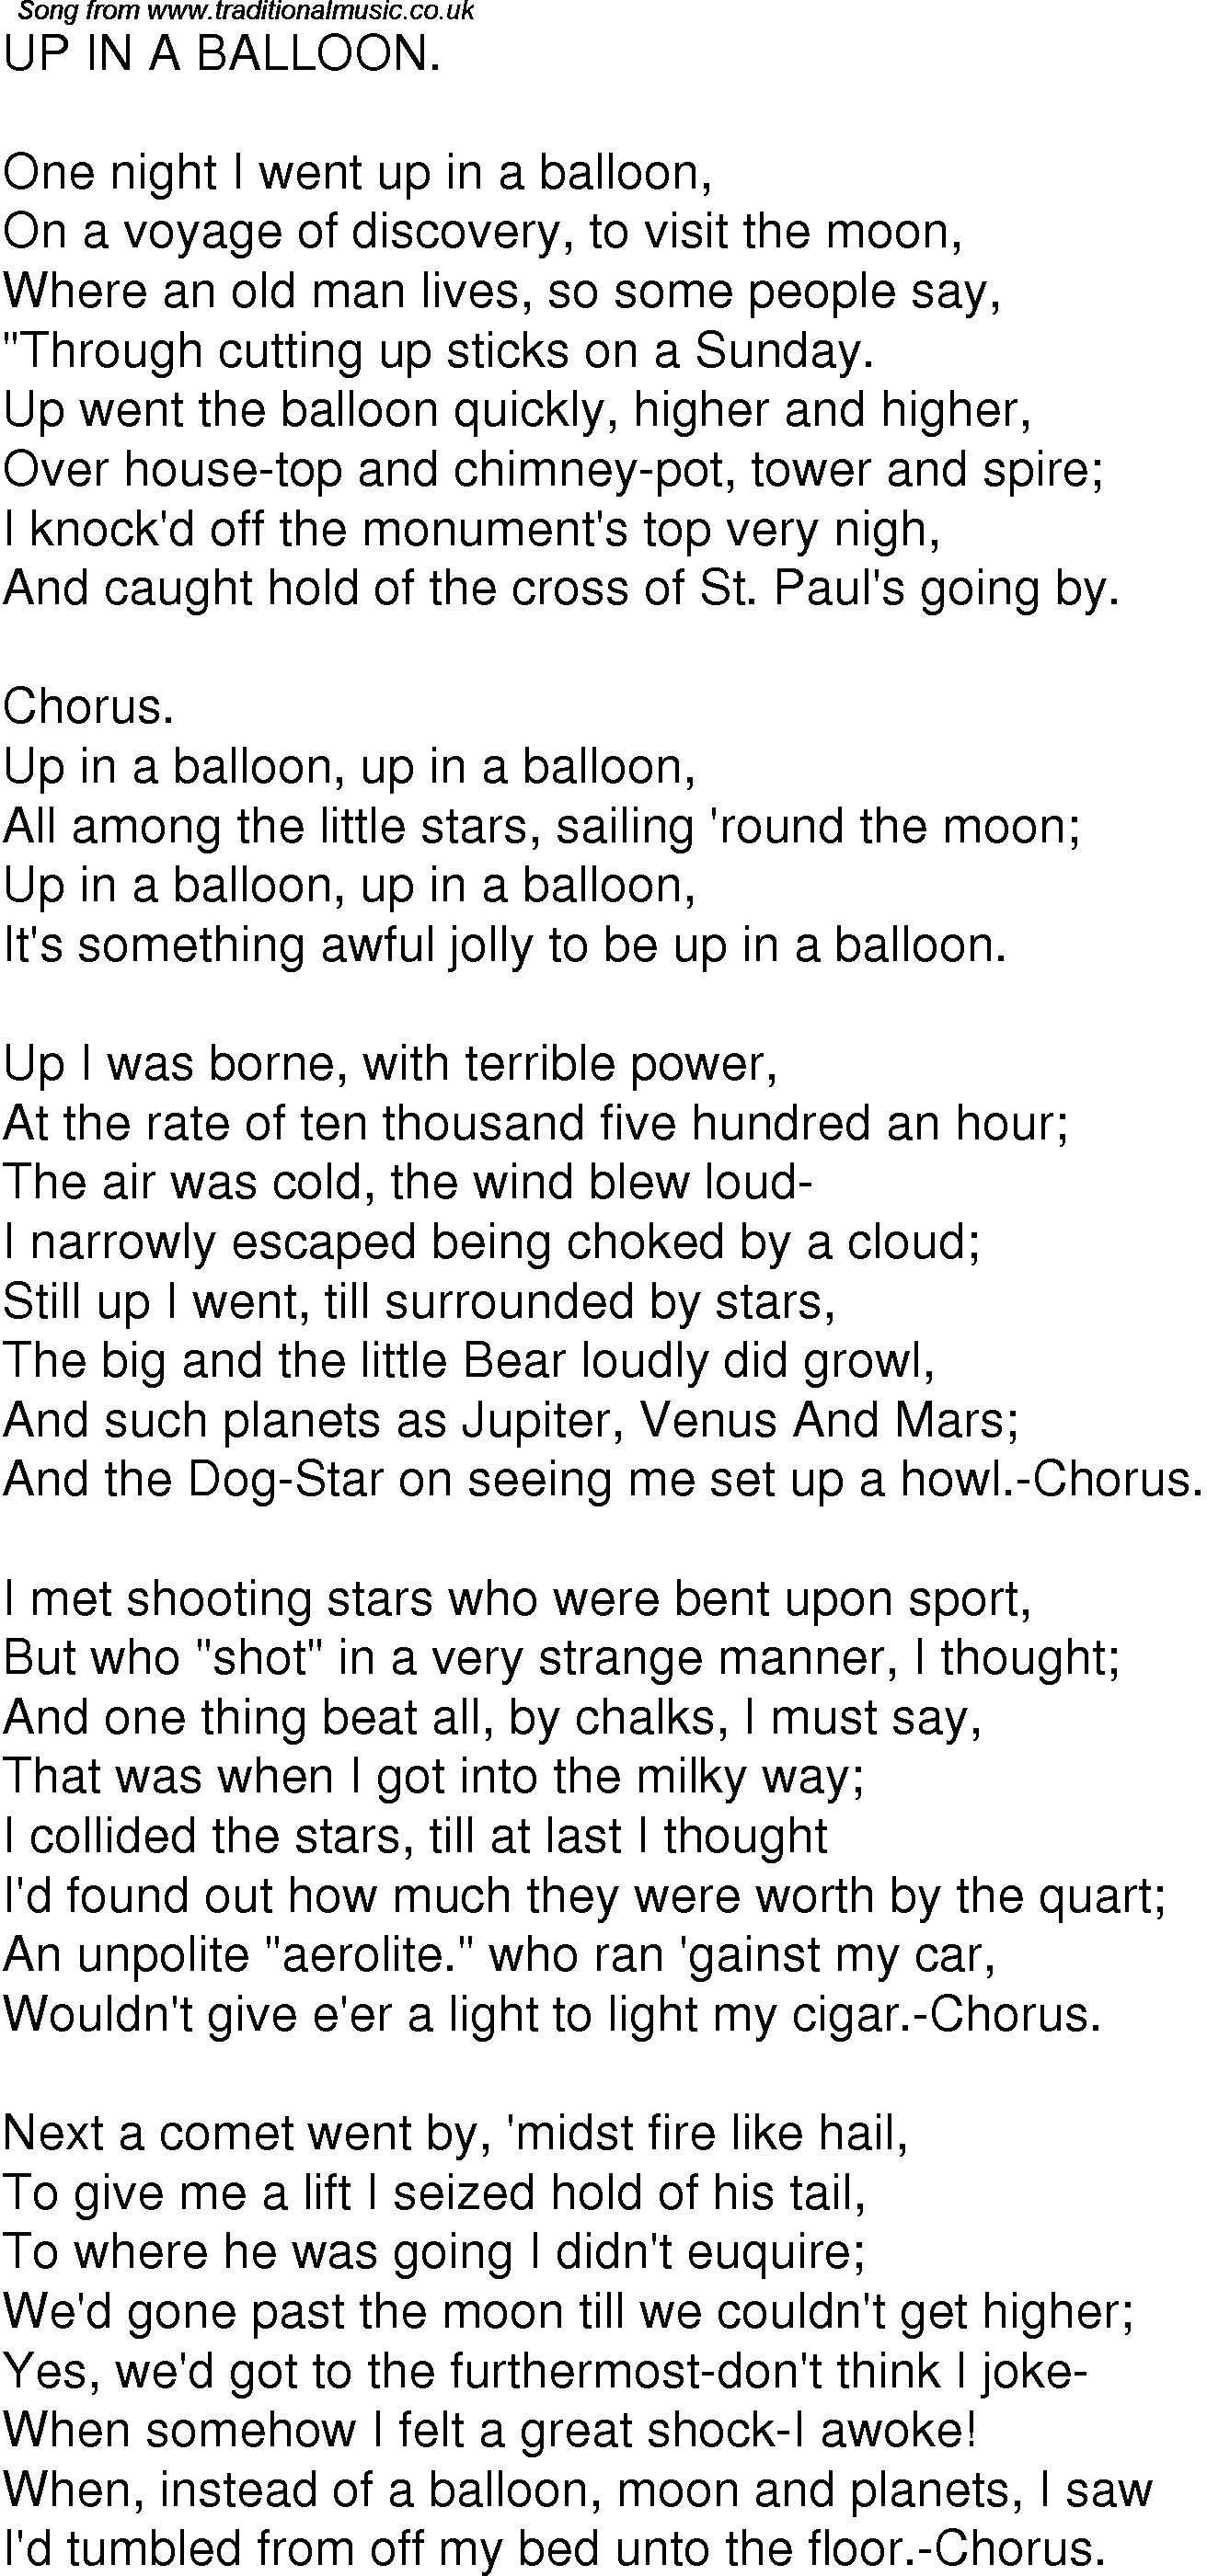 Venus lyrics